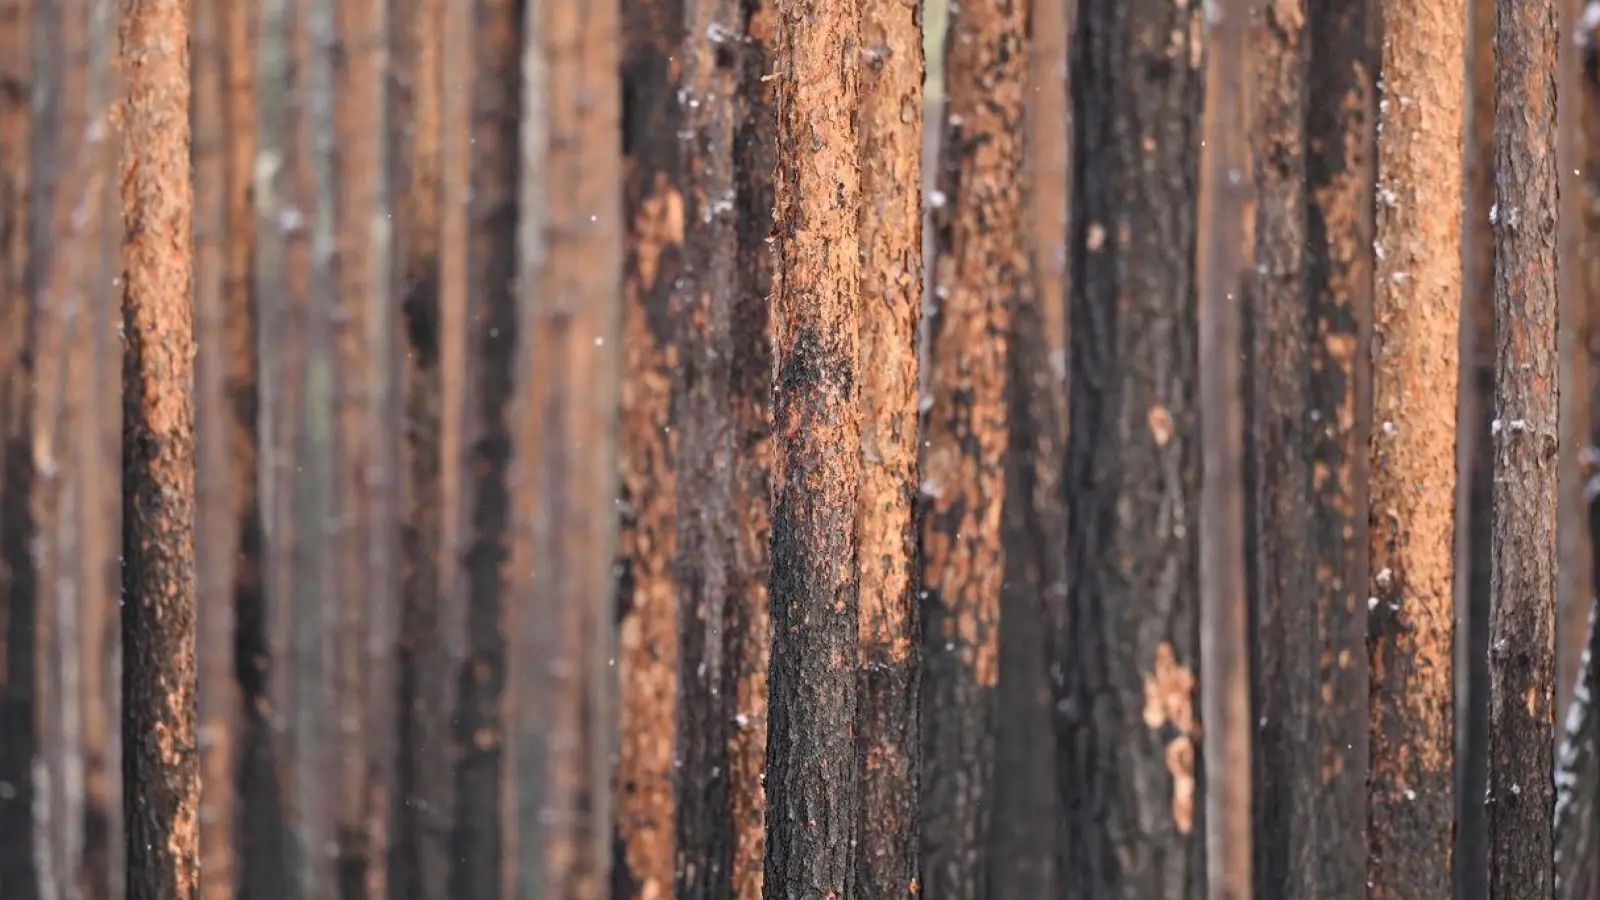 Durch einen Brand geschädigte Kiefern stehen im Landeswald Seddin. (Foto: Monika Skolimowska/dpa)